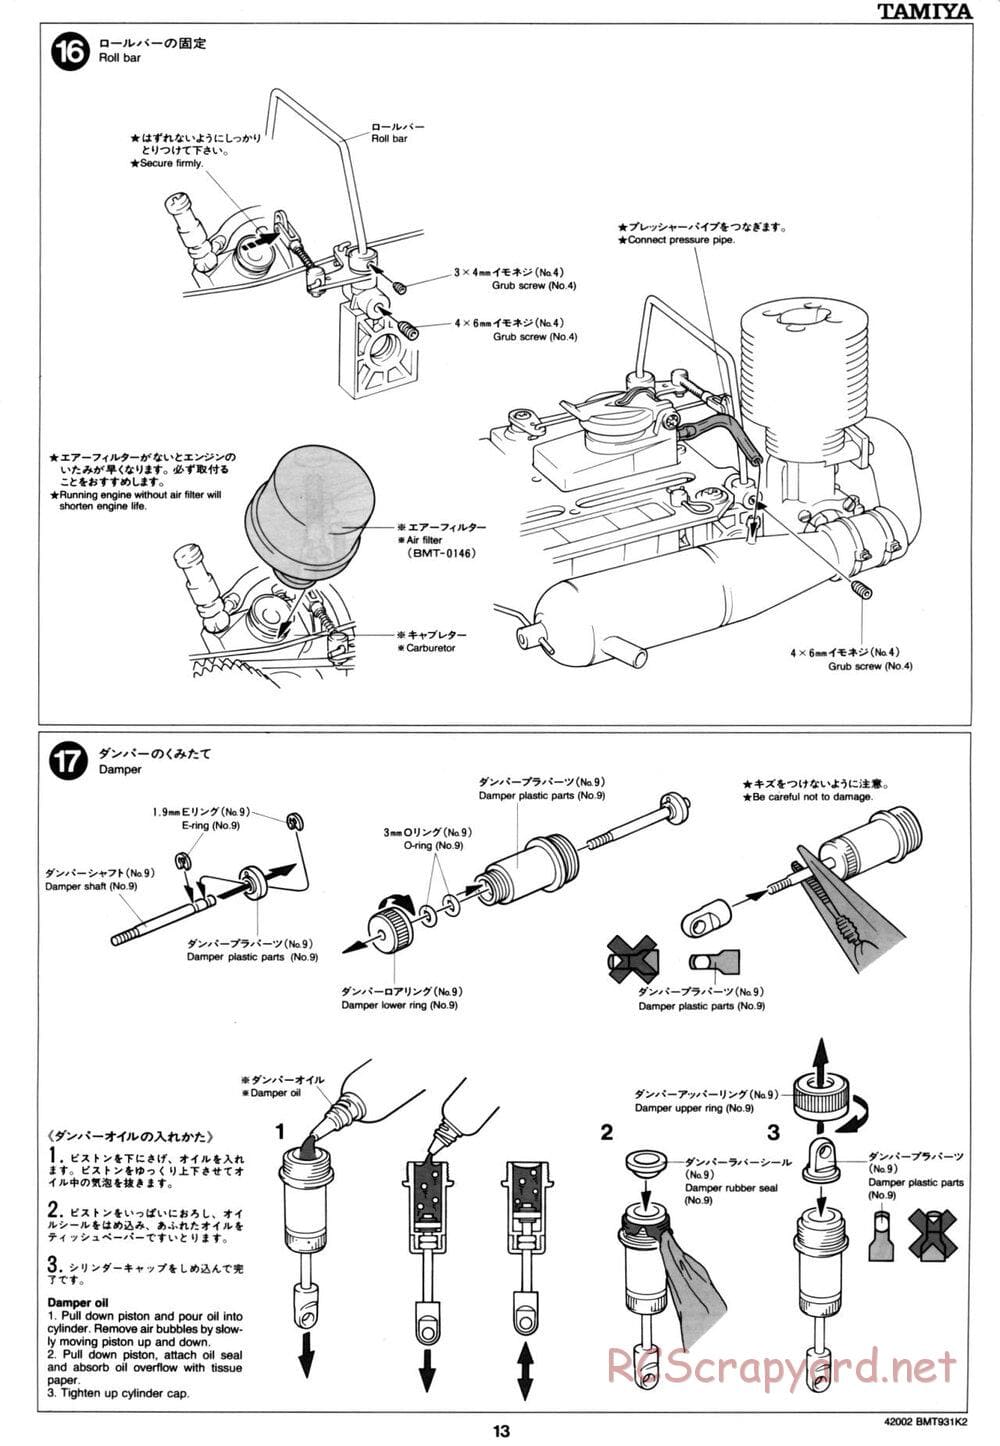 Tamiya - BMT 931 K2 Racing Chassis - Manual - Page 13